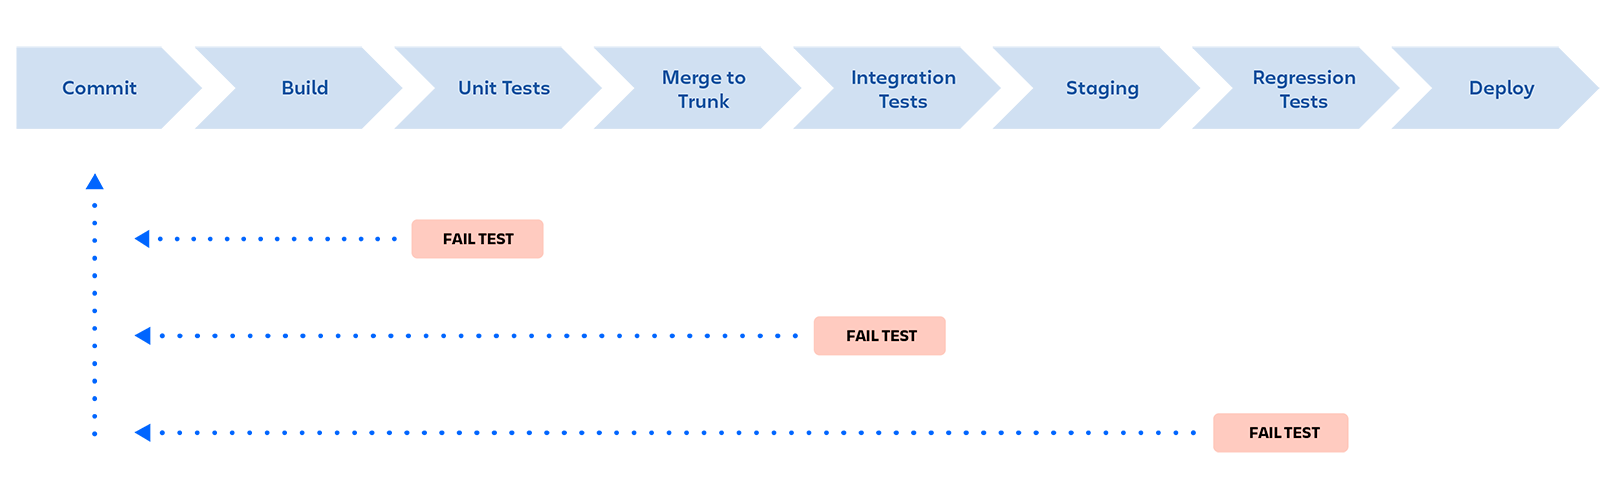 DevOps-Pipeline: Commit, Build, Unit-Tests, Merge in Trunk, Integrationstests, Staging, Regressionstests, Bereitstellung. Die Pipeline wird gestoppt, wenn ein Test in irgendeiner Phase fehlschlägt, und der Entwickler erhält Feedback.